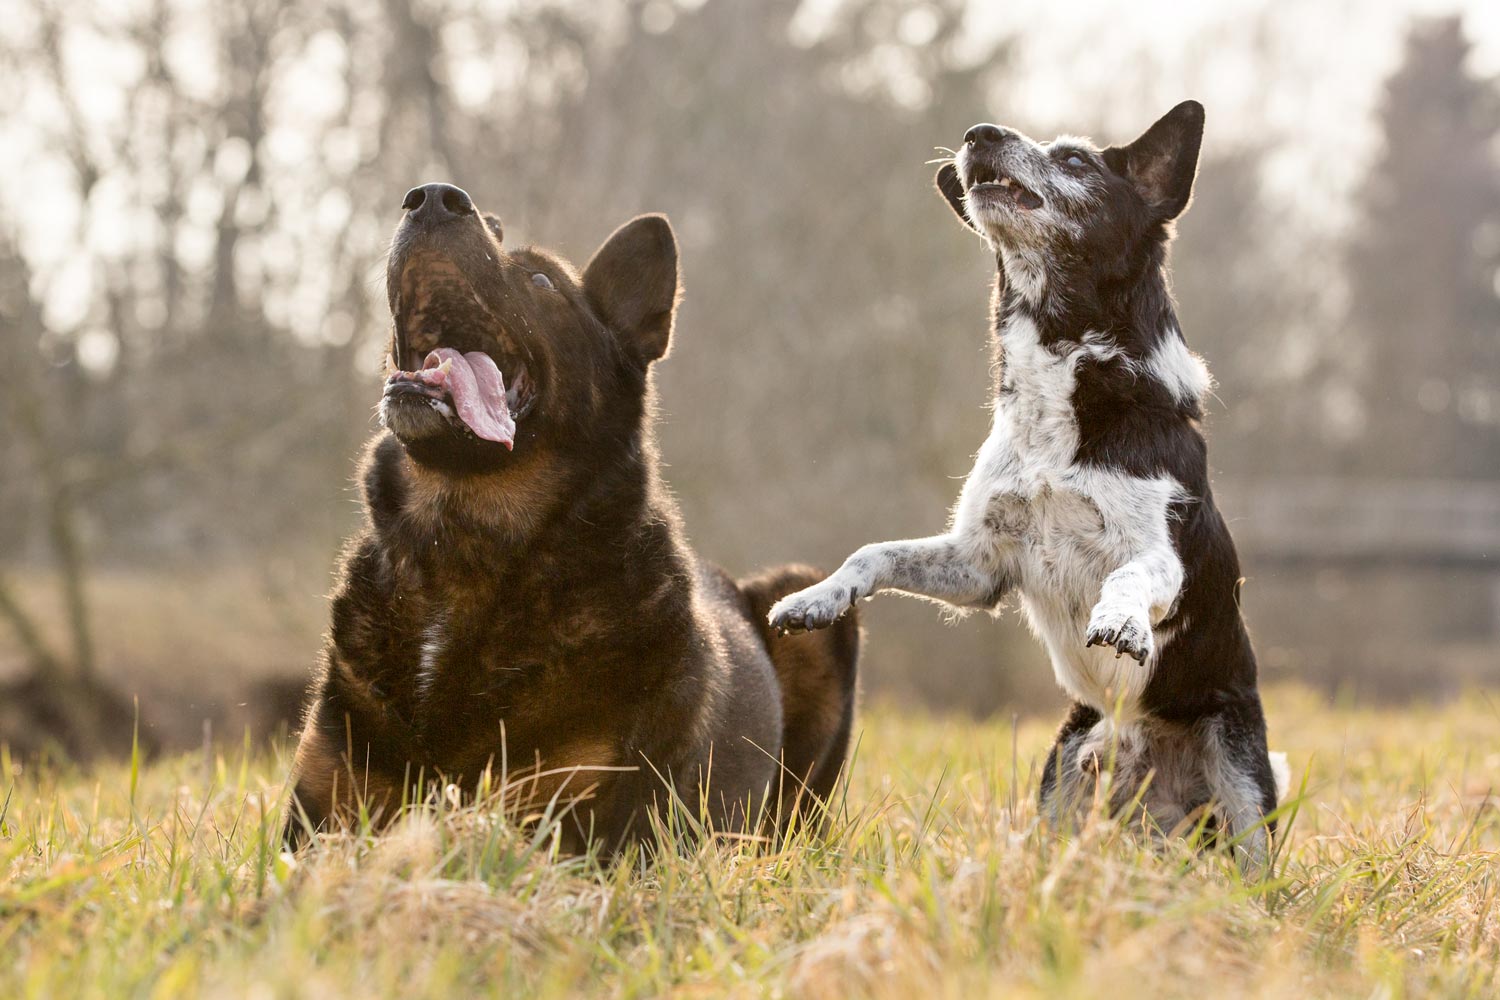 Fotoshooting mit Hund Schäferhund und Mischling fotografiert von Jessica Kreit Hundefotografin aus Hannover